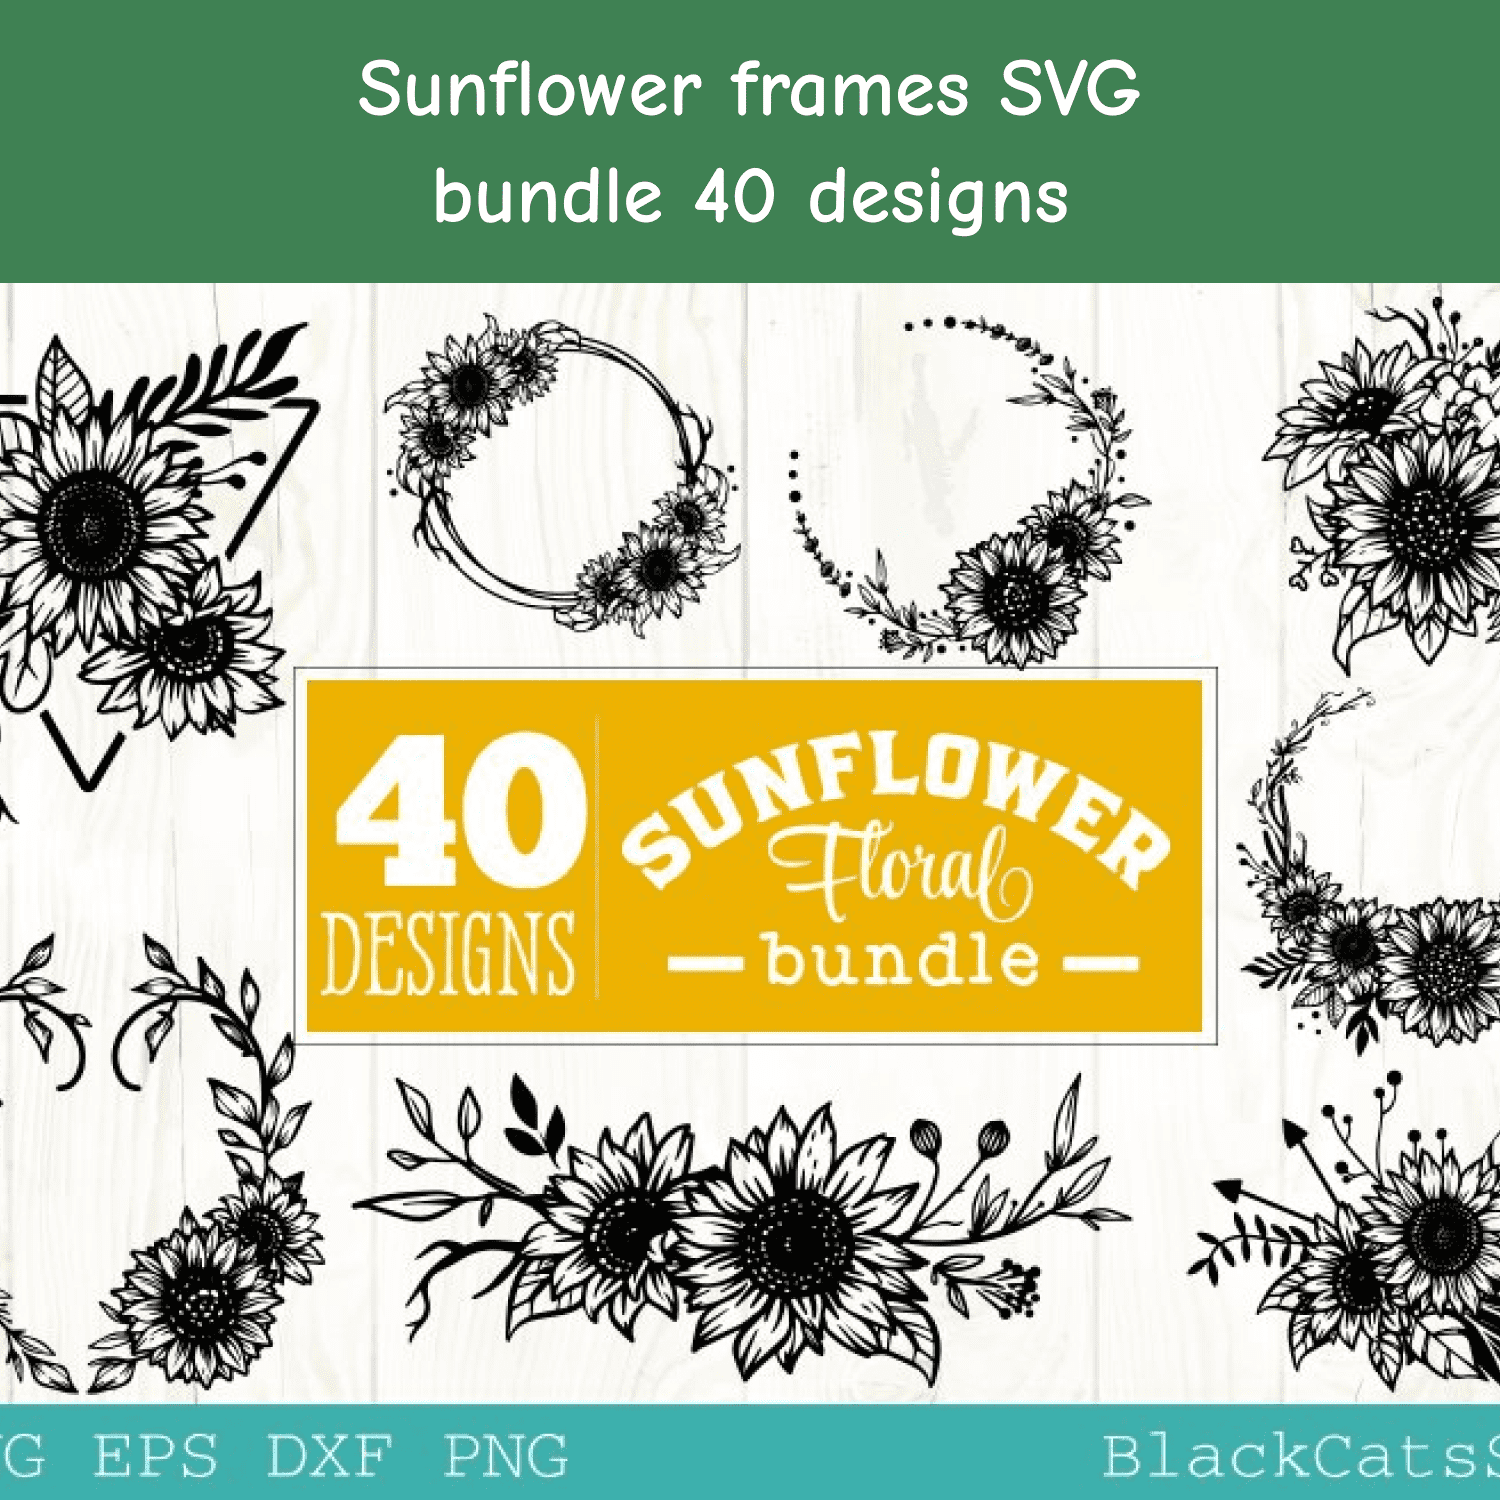 Sunflower Frames SVG Bundle 40 Designs.